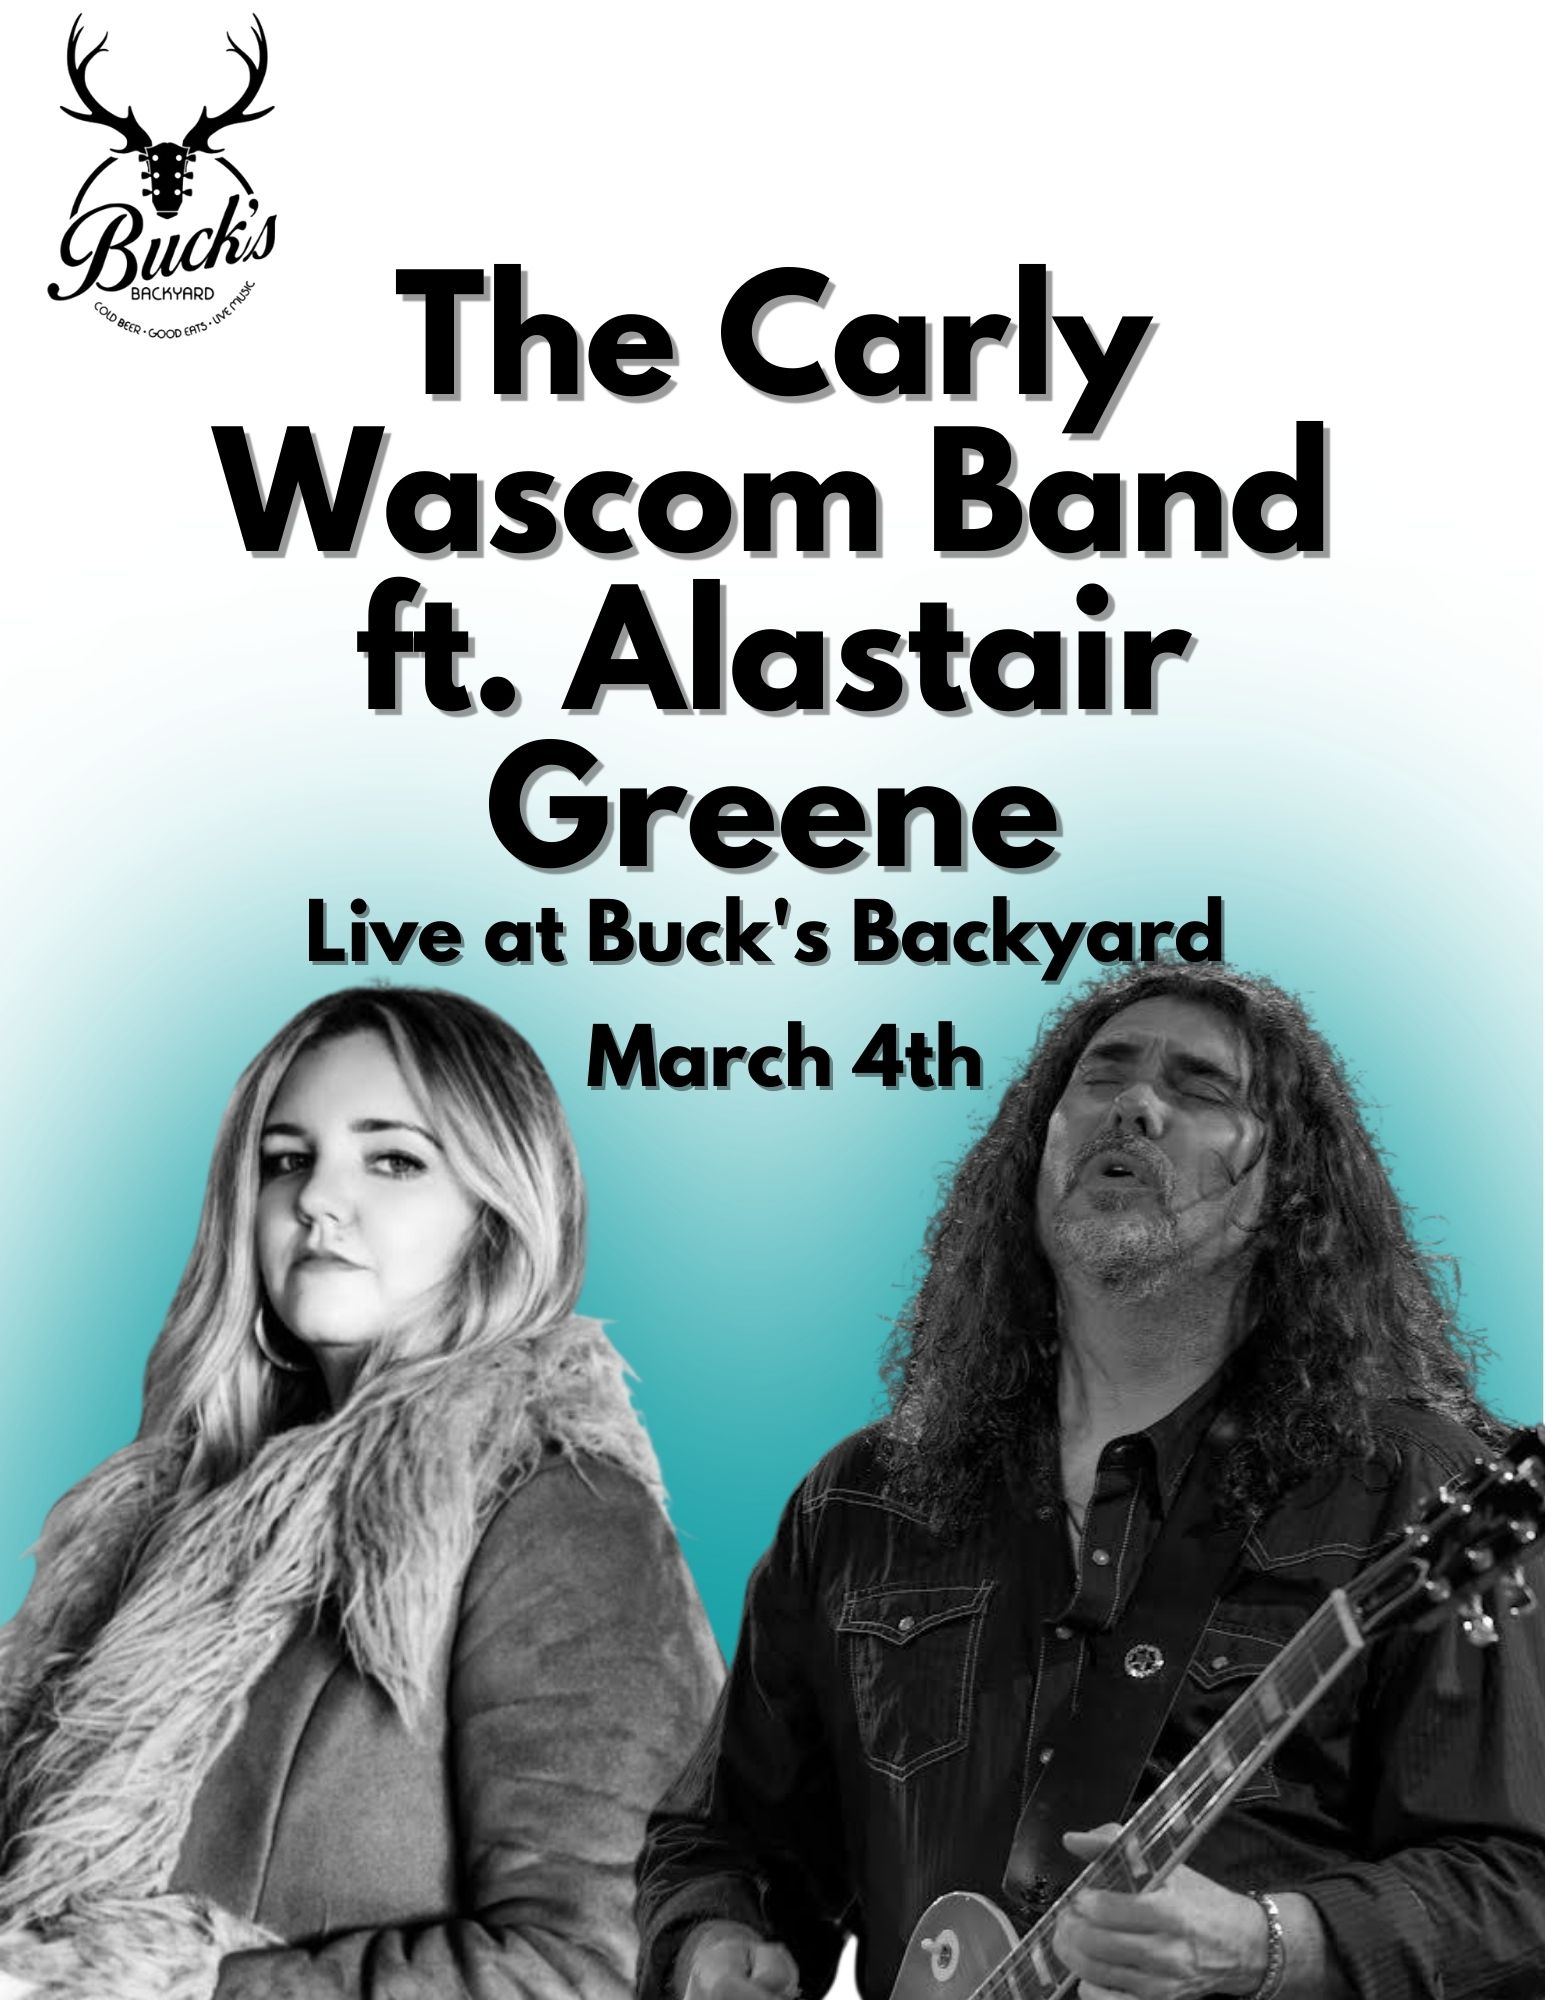 The Carly Wascom Band - Alastair Greene - Buck's Backyard